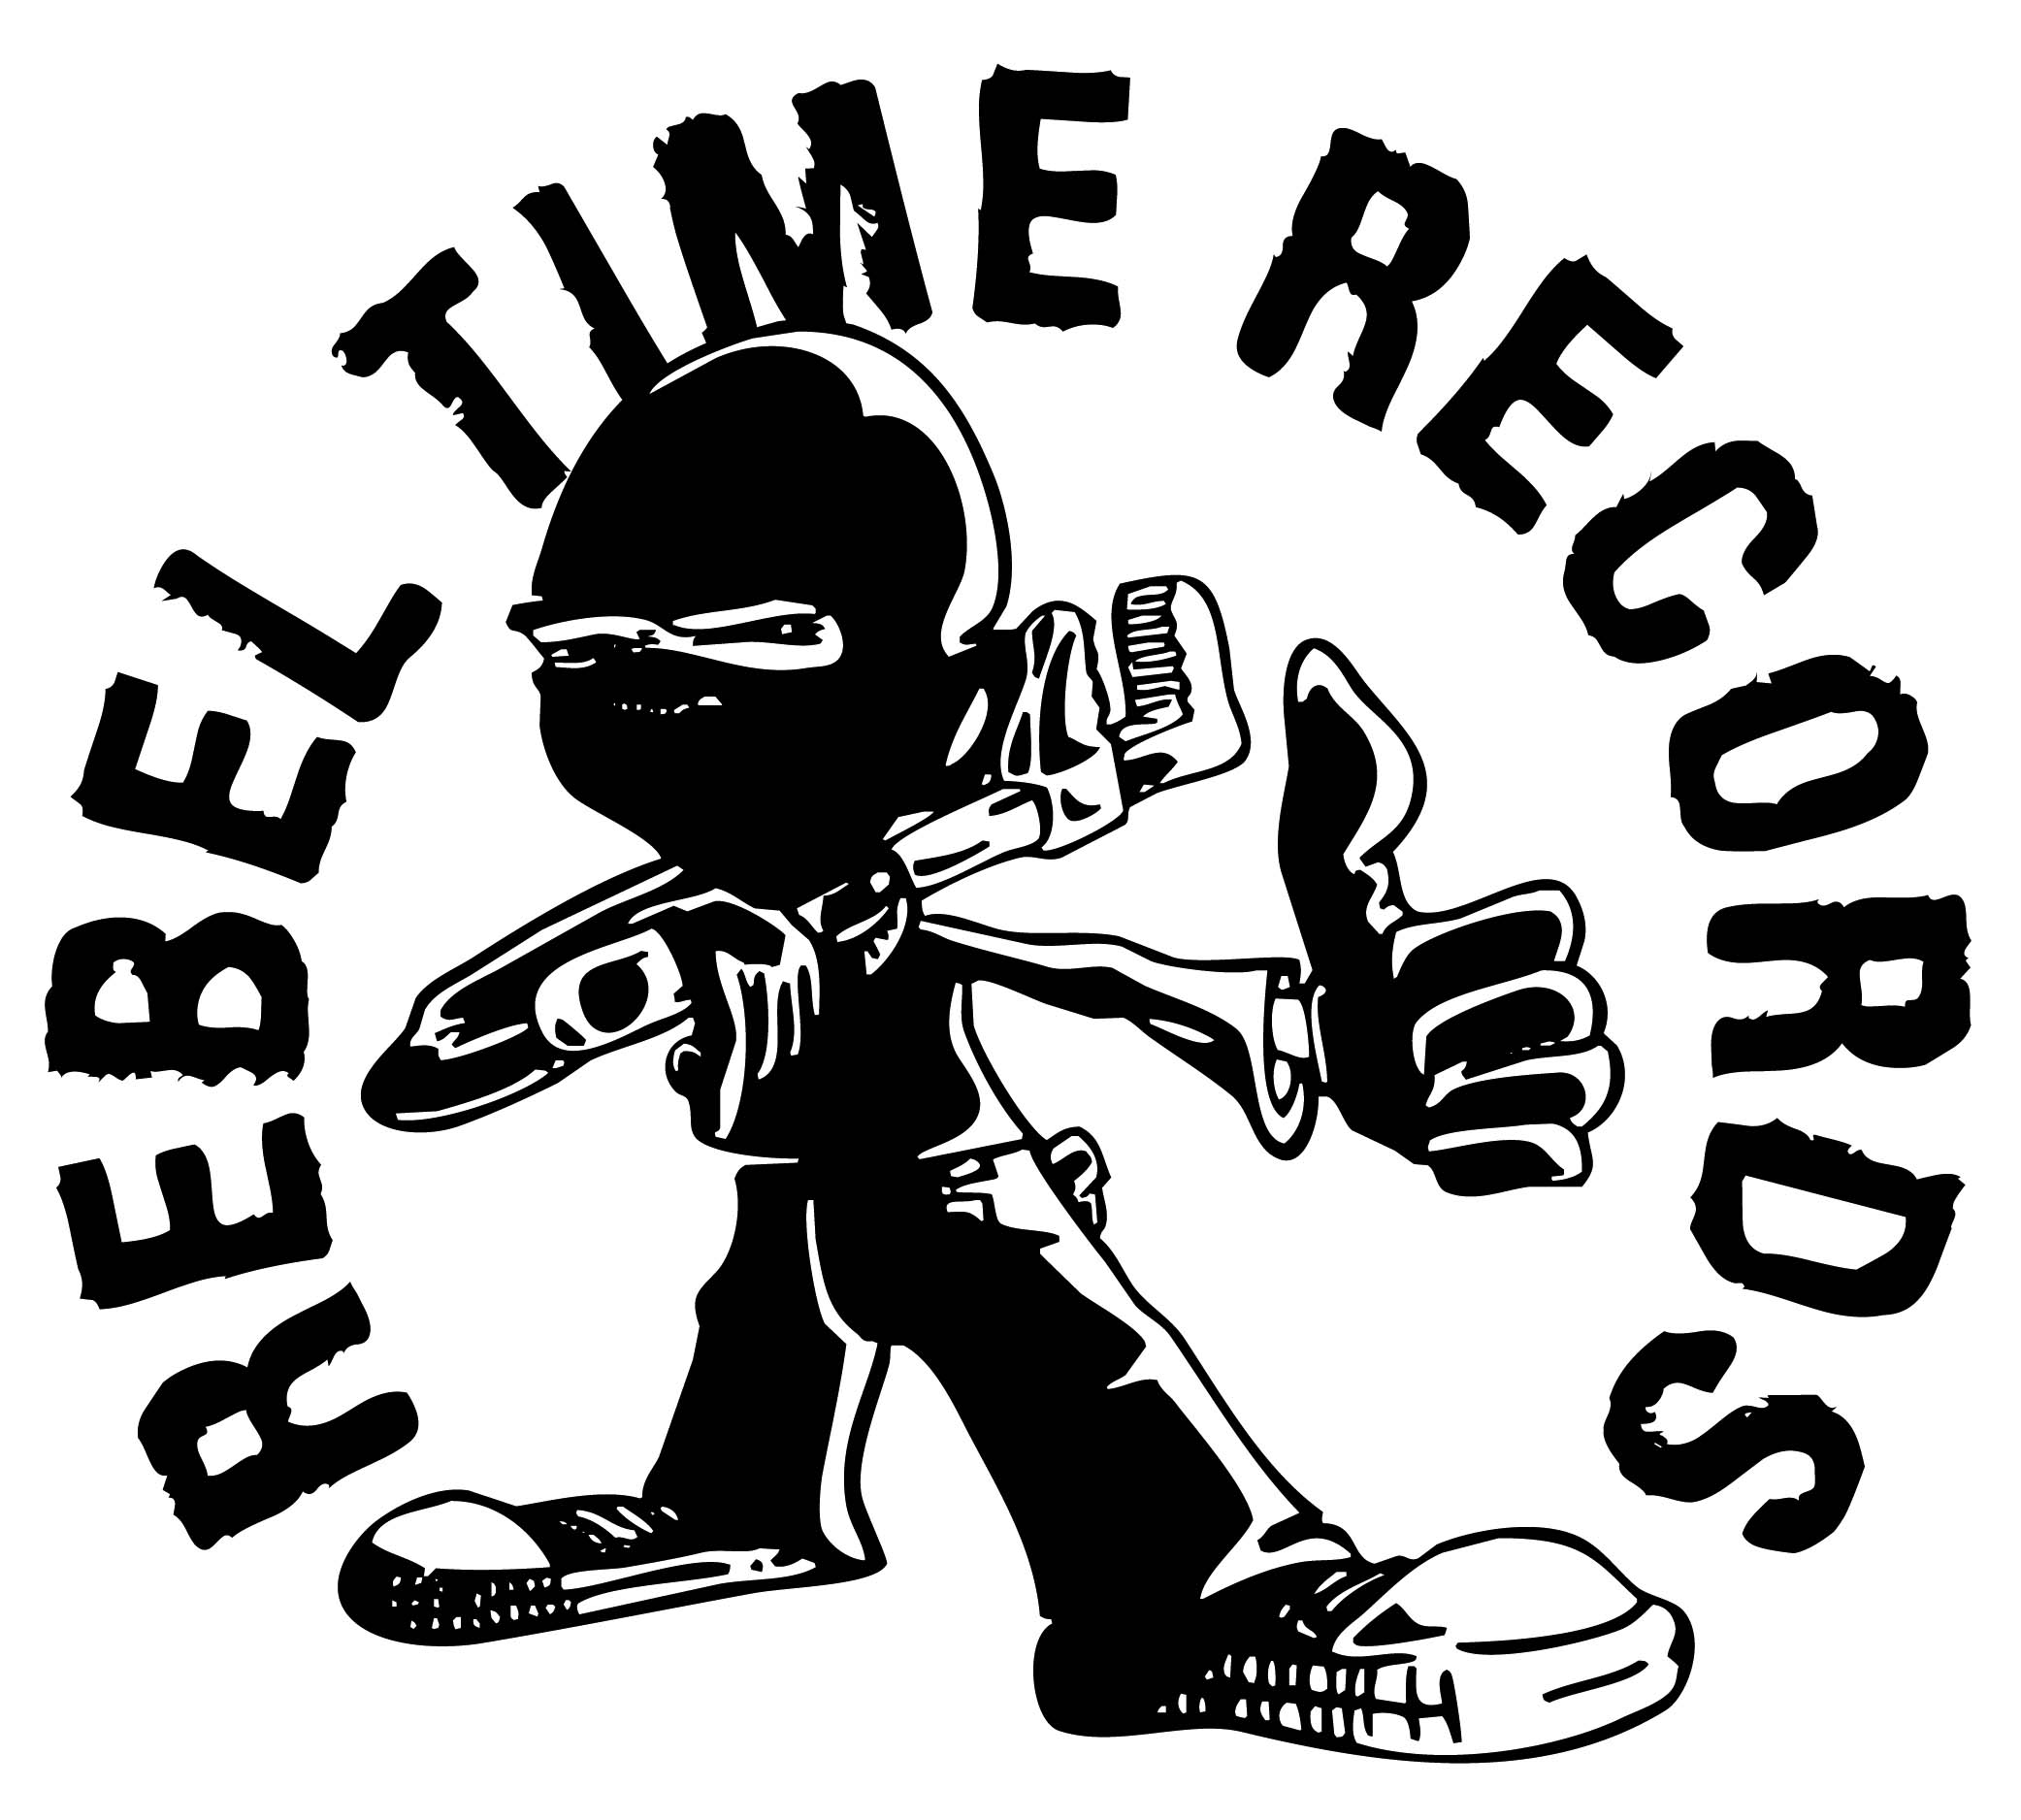 Rebel Time Records Circle Logo